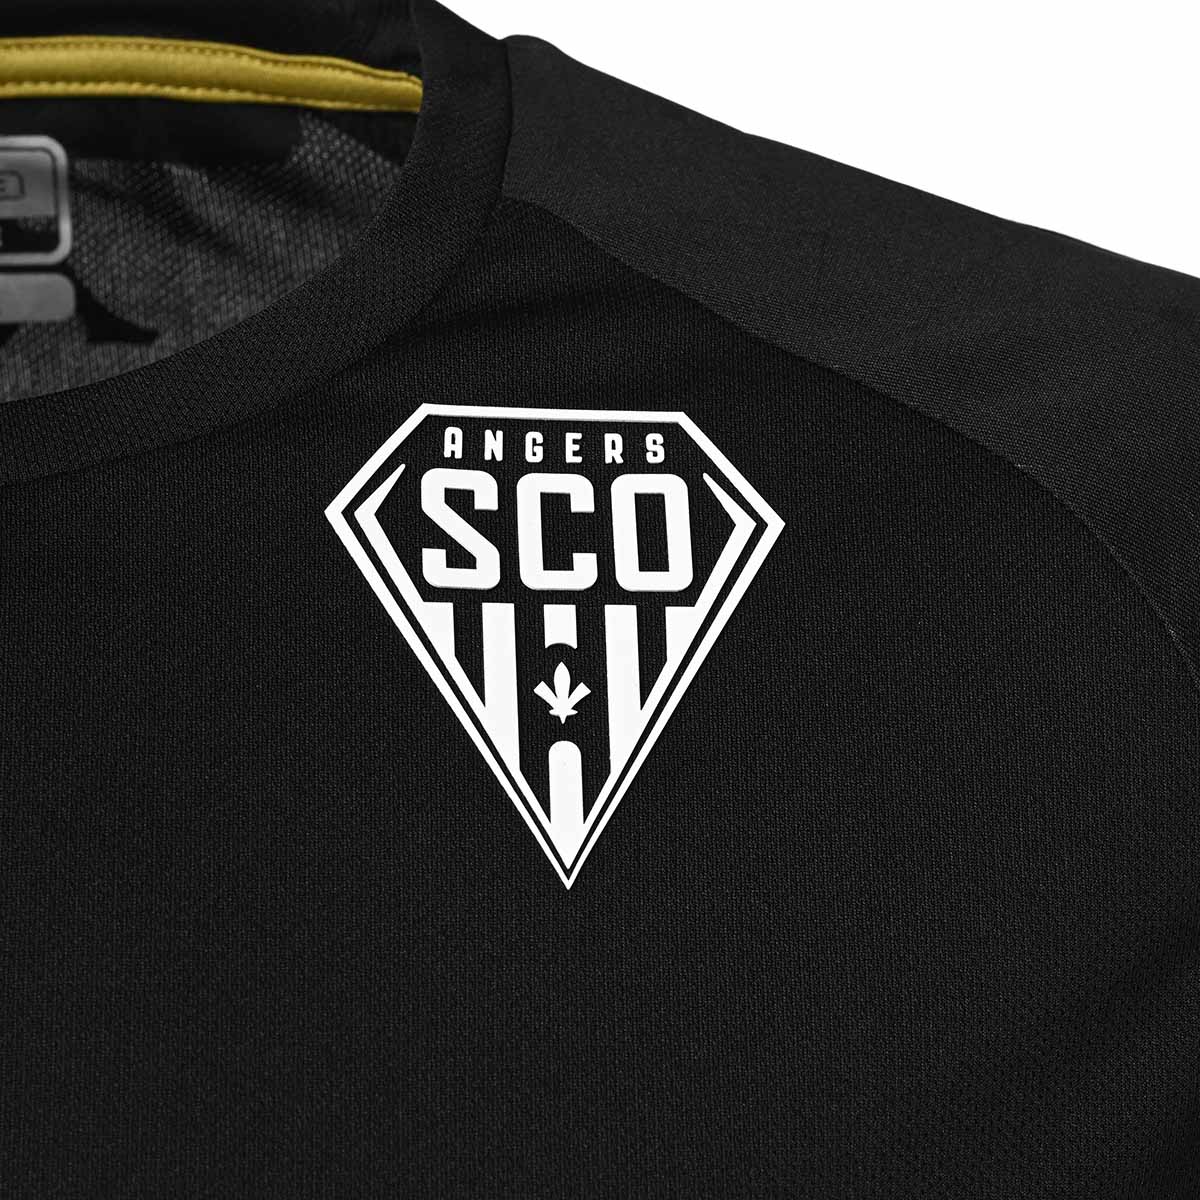 Abou Pro 6 Angers SCO 22/23 Camiseta Negra Niño